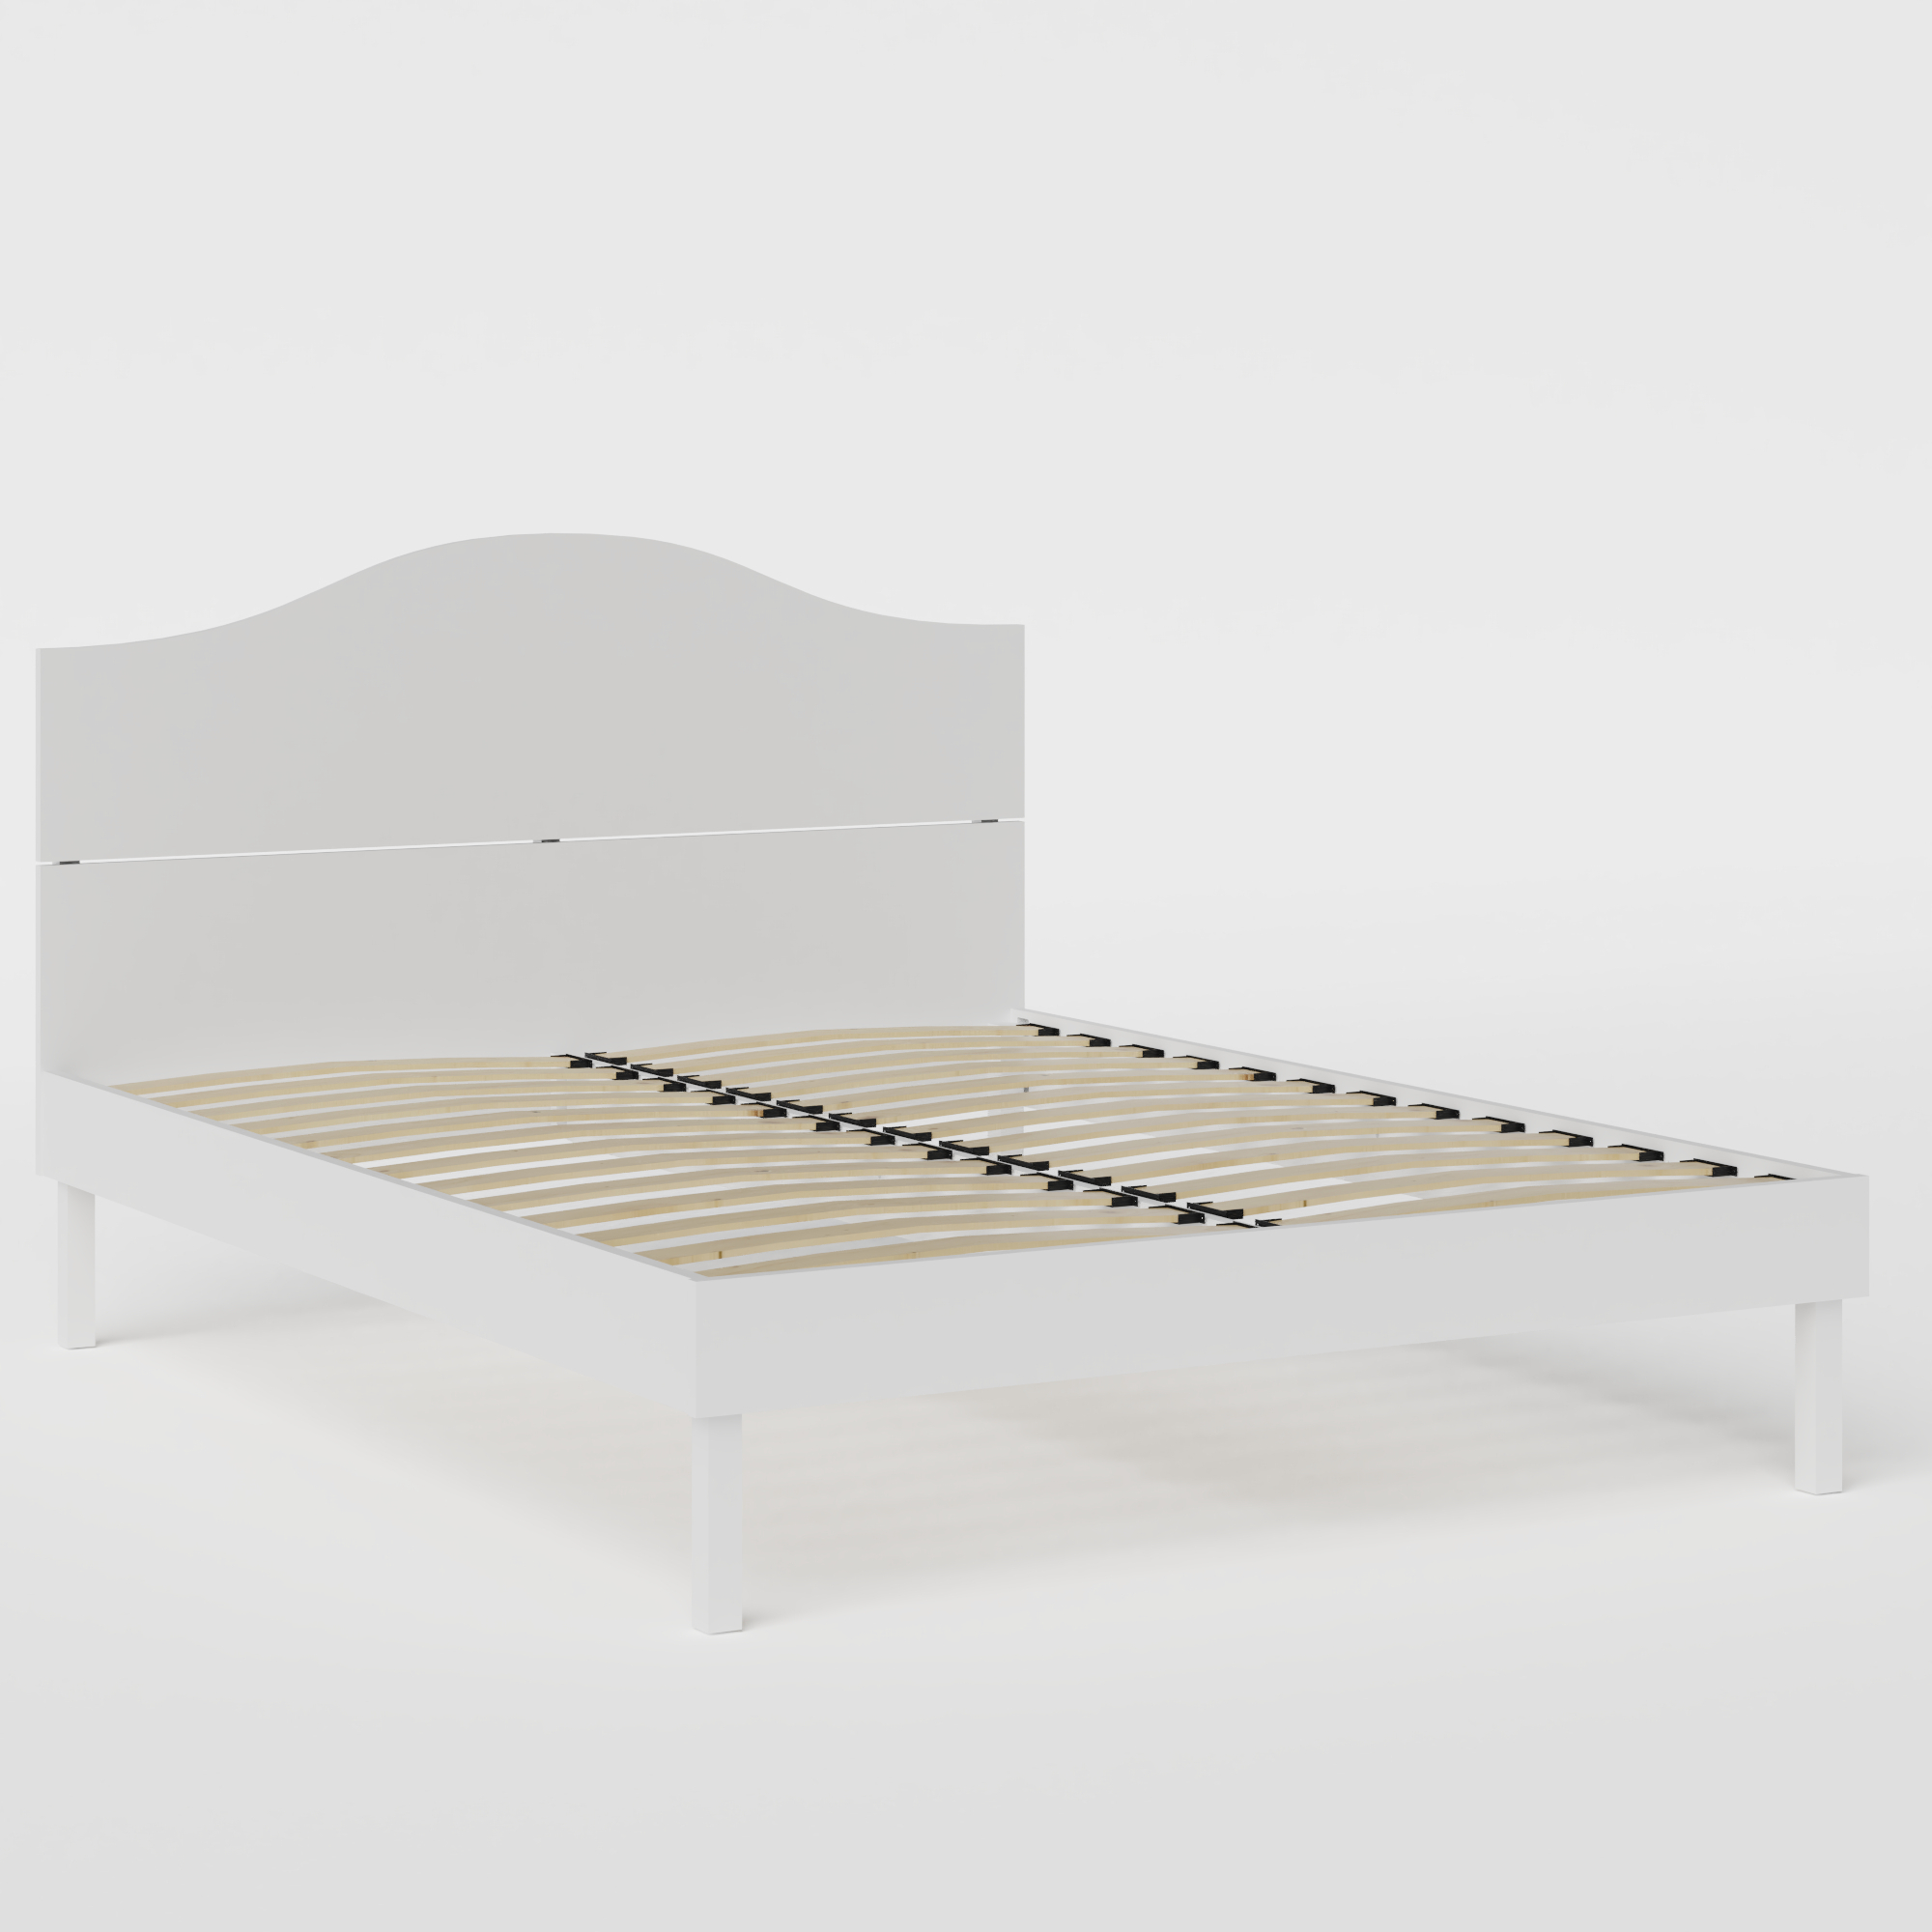 Yoshida Painted letto in legno bianco